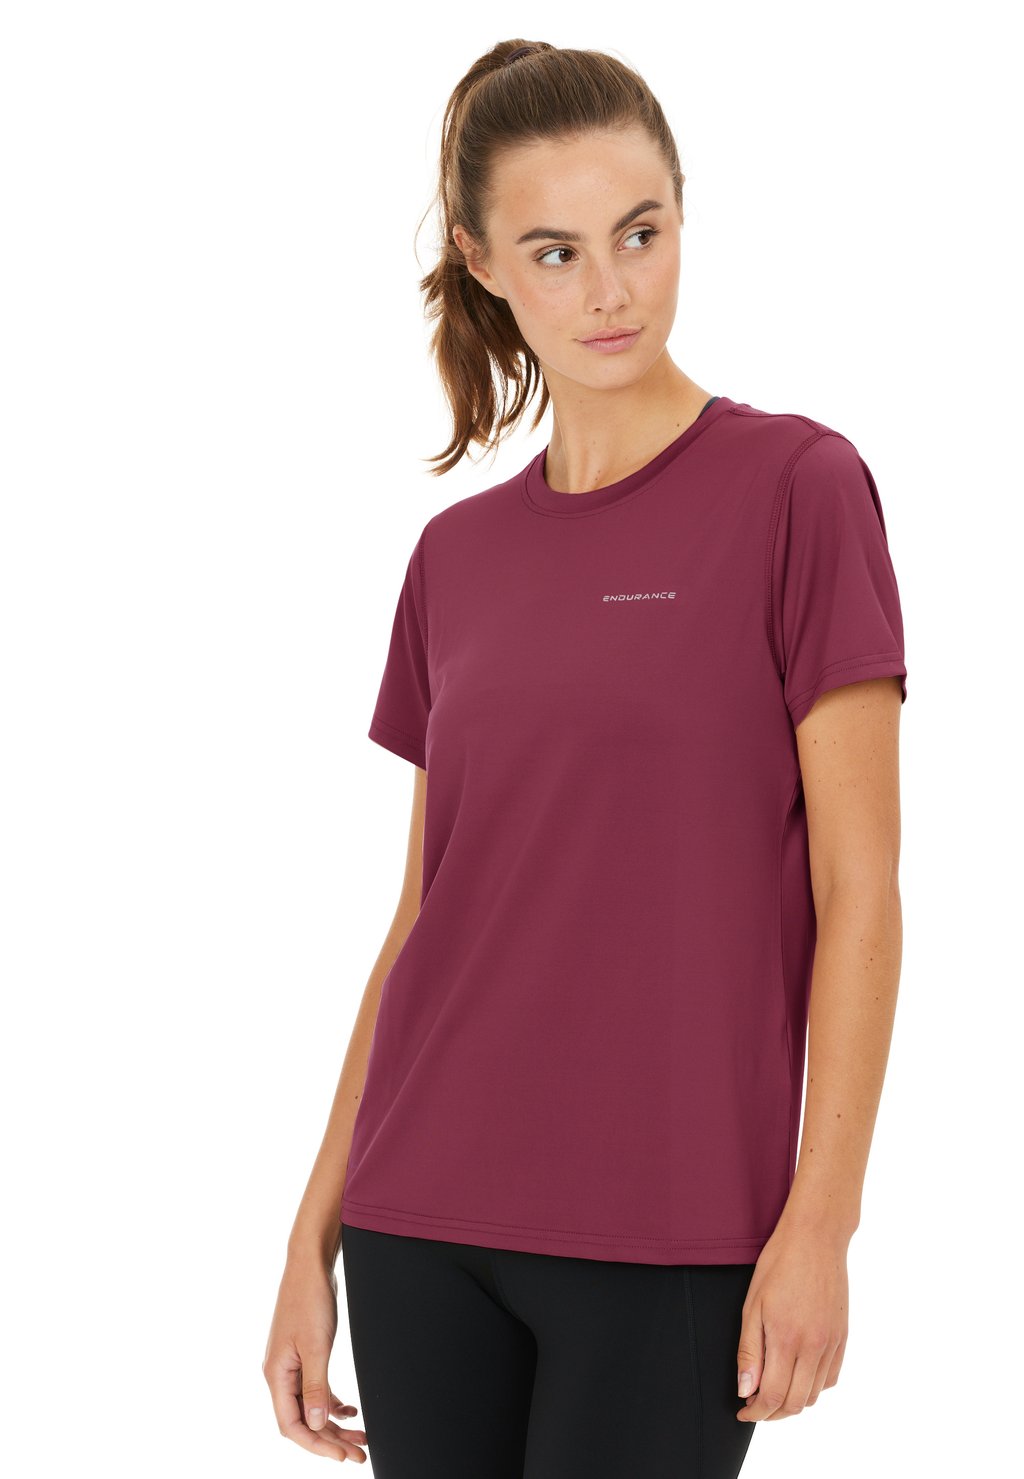 Спортивная футболка FUNKTIONS YONAN Endurance, цвет tawny port толстовка на молнии tesero teens track fila цвет tawny port